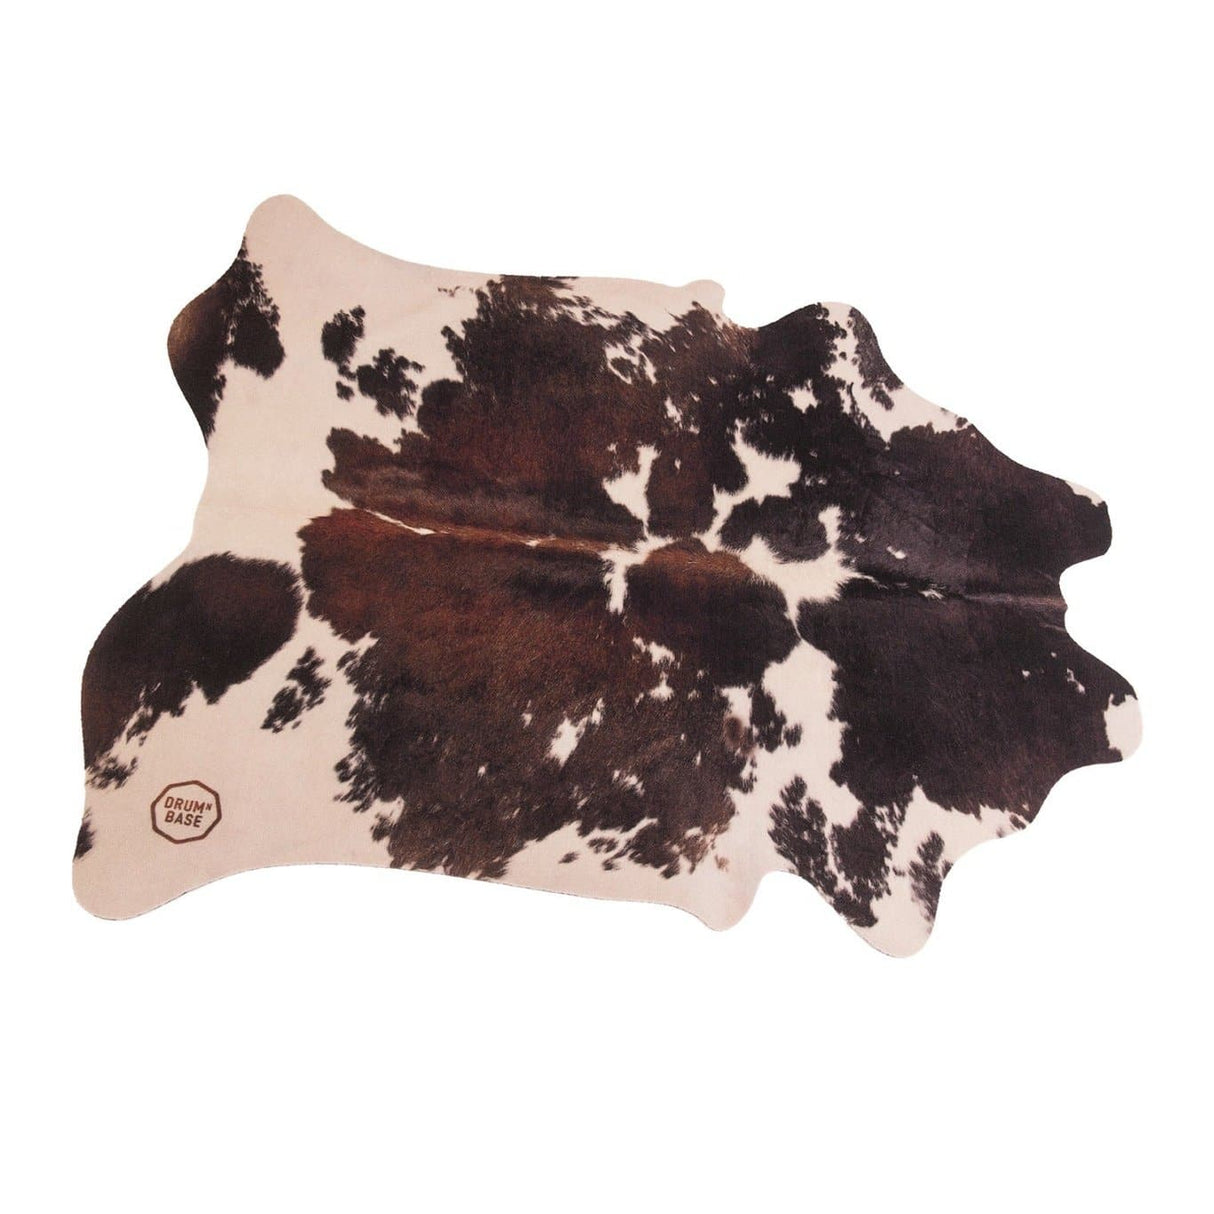 DRUMnBASE Vegan Cow Drum Rug 6' x 5.25' Clara Black/White